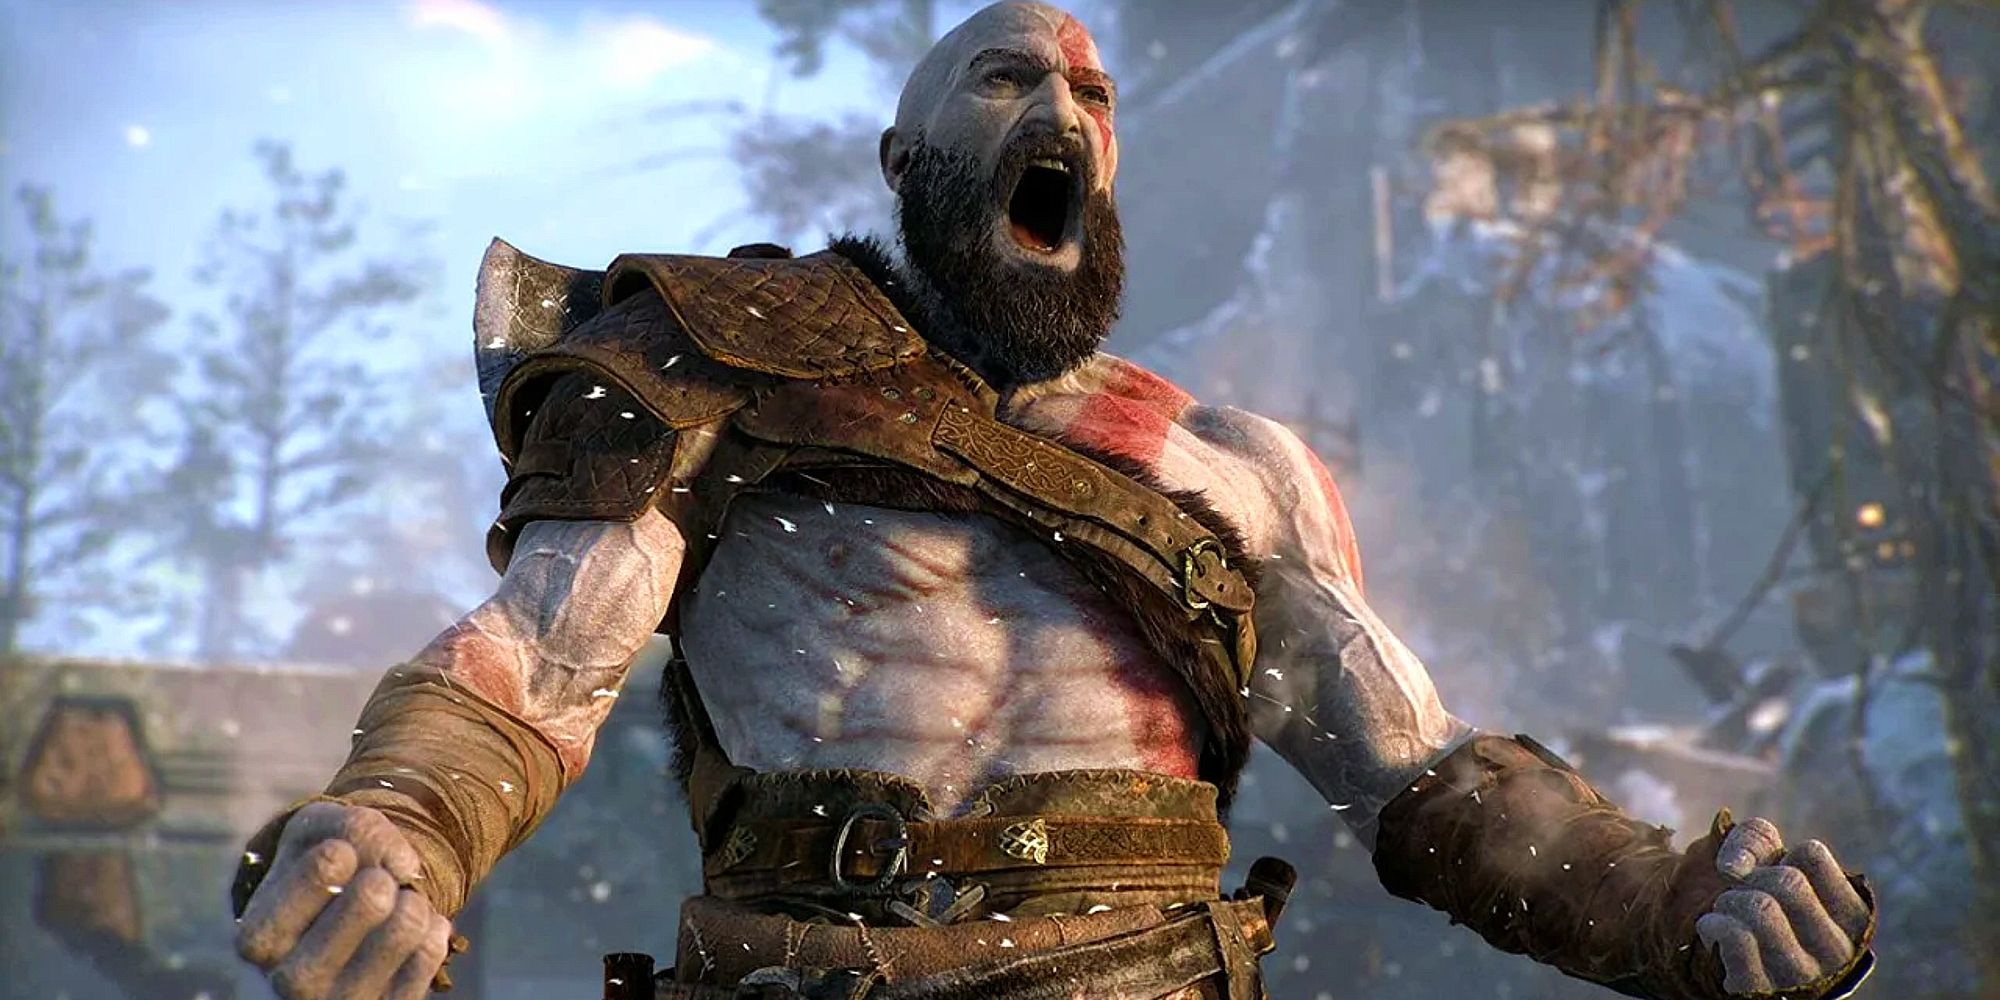 Imagem de Kratos liberando sua fúria berserker com um grito assustador.